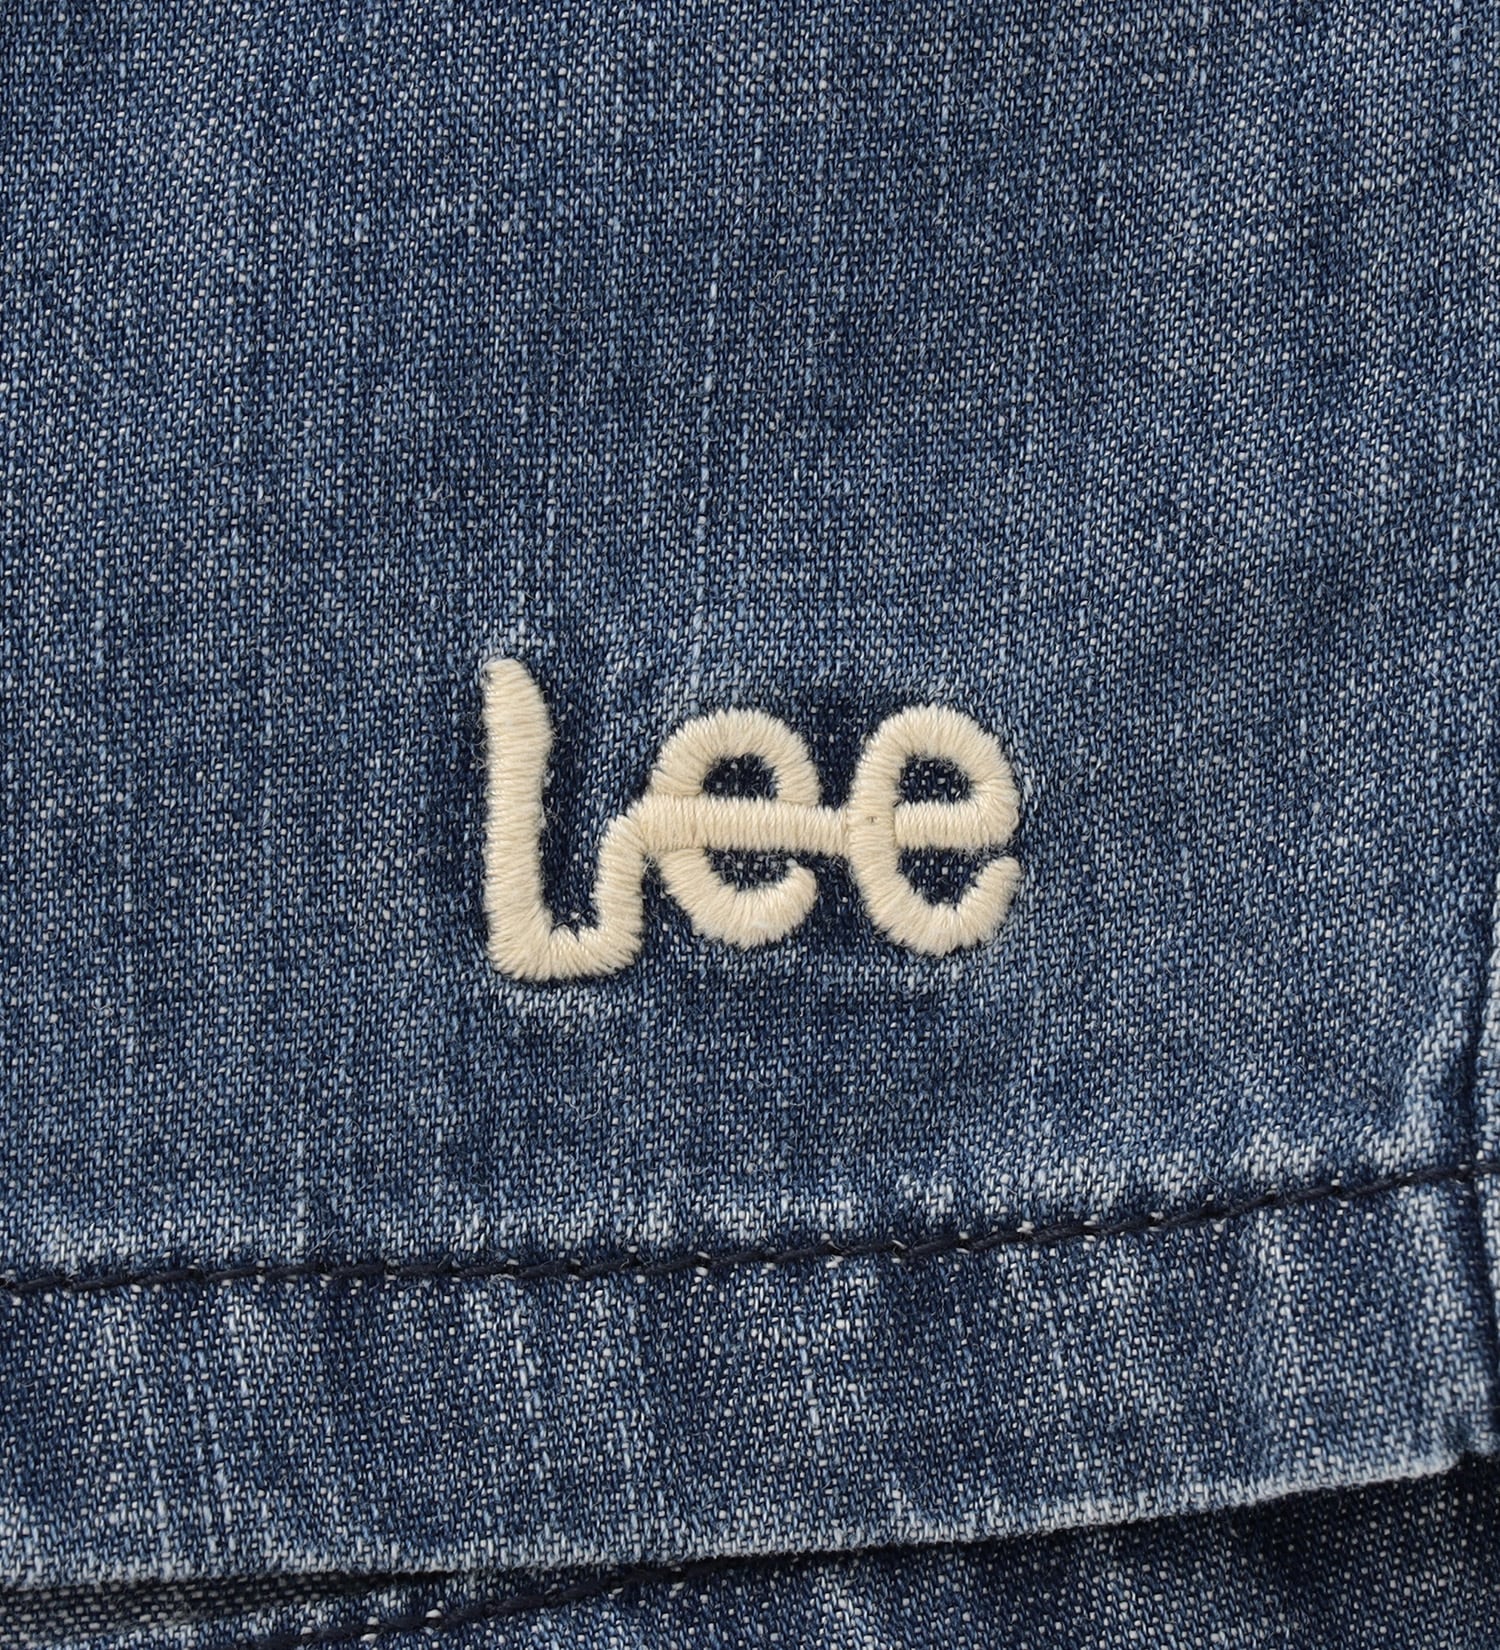 Lee(リー)の【110-150cm】キッズ アスレチックショーツ|パンツ/パンツ/キッズ|中色ブルー